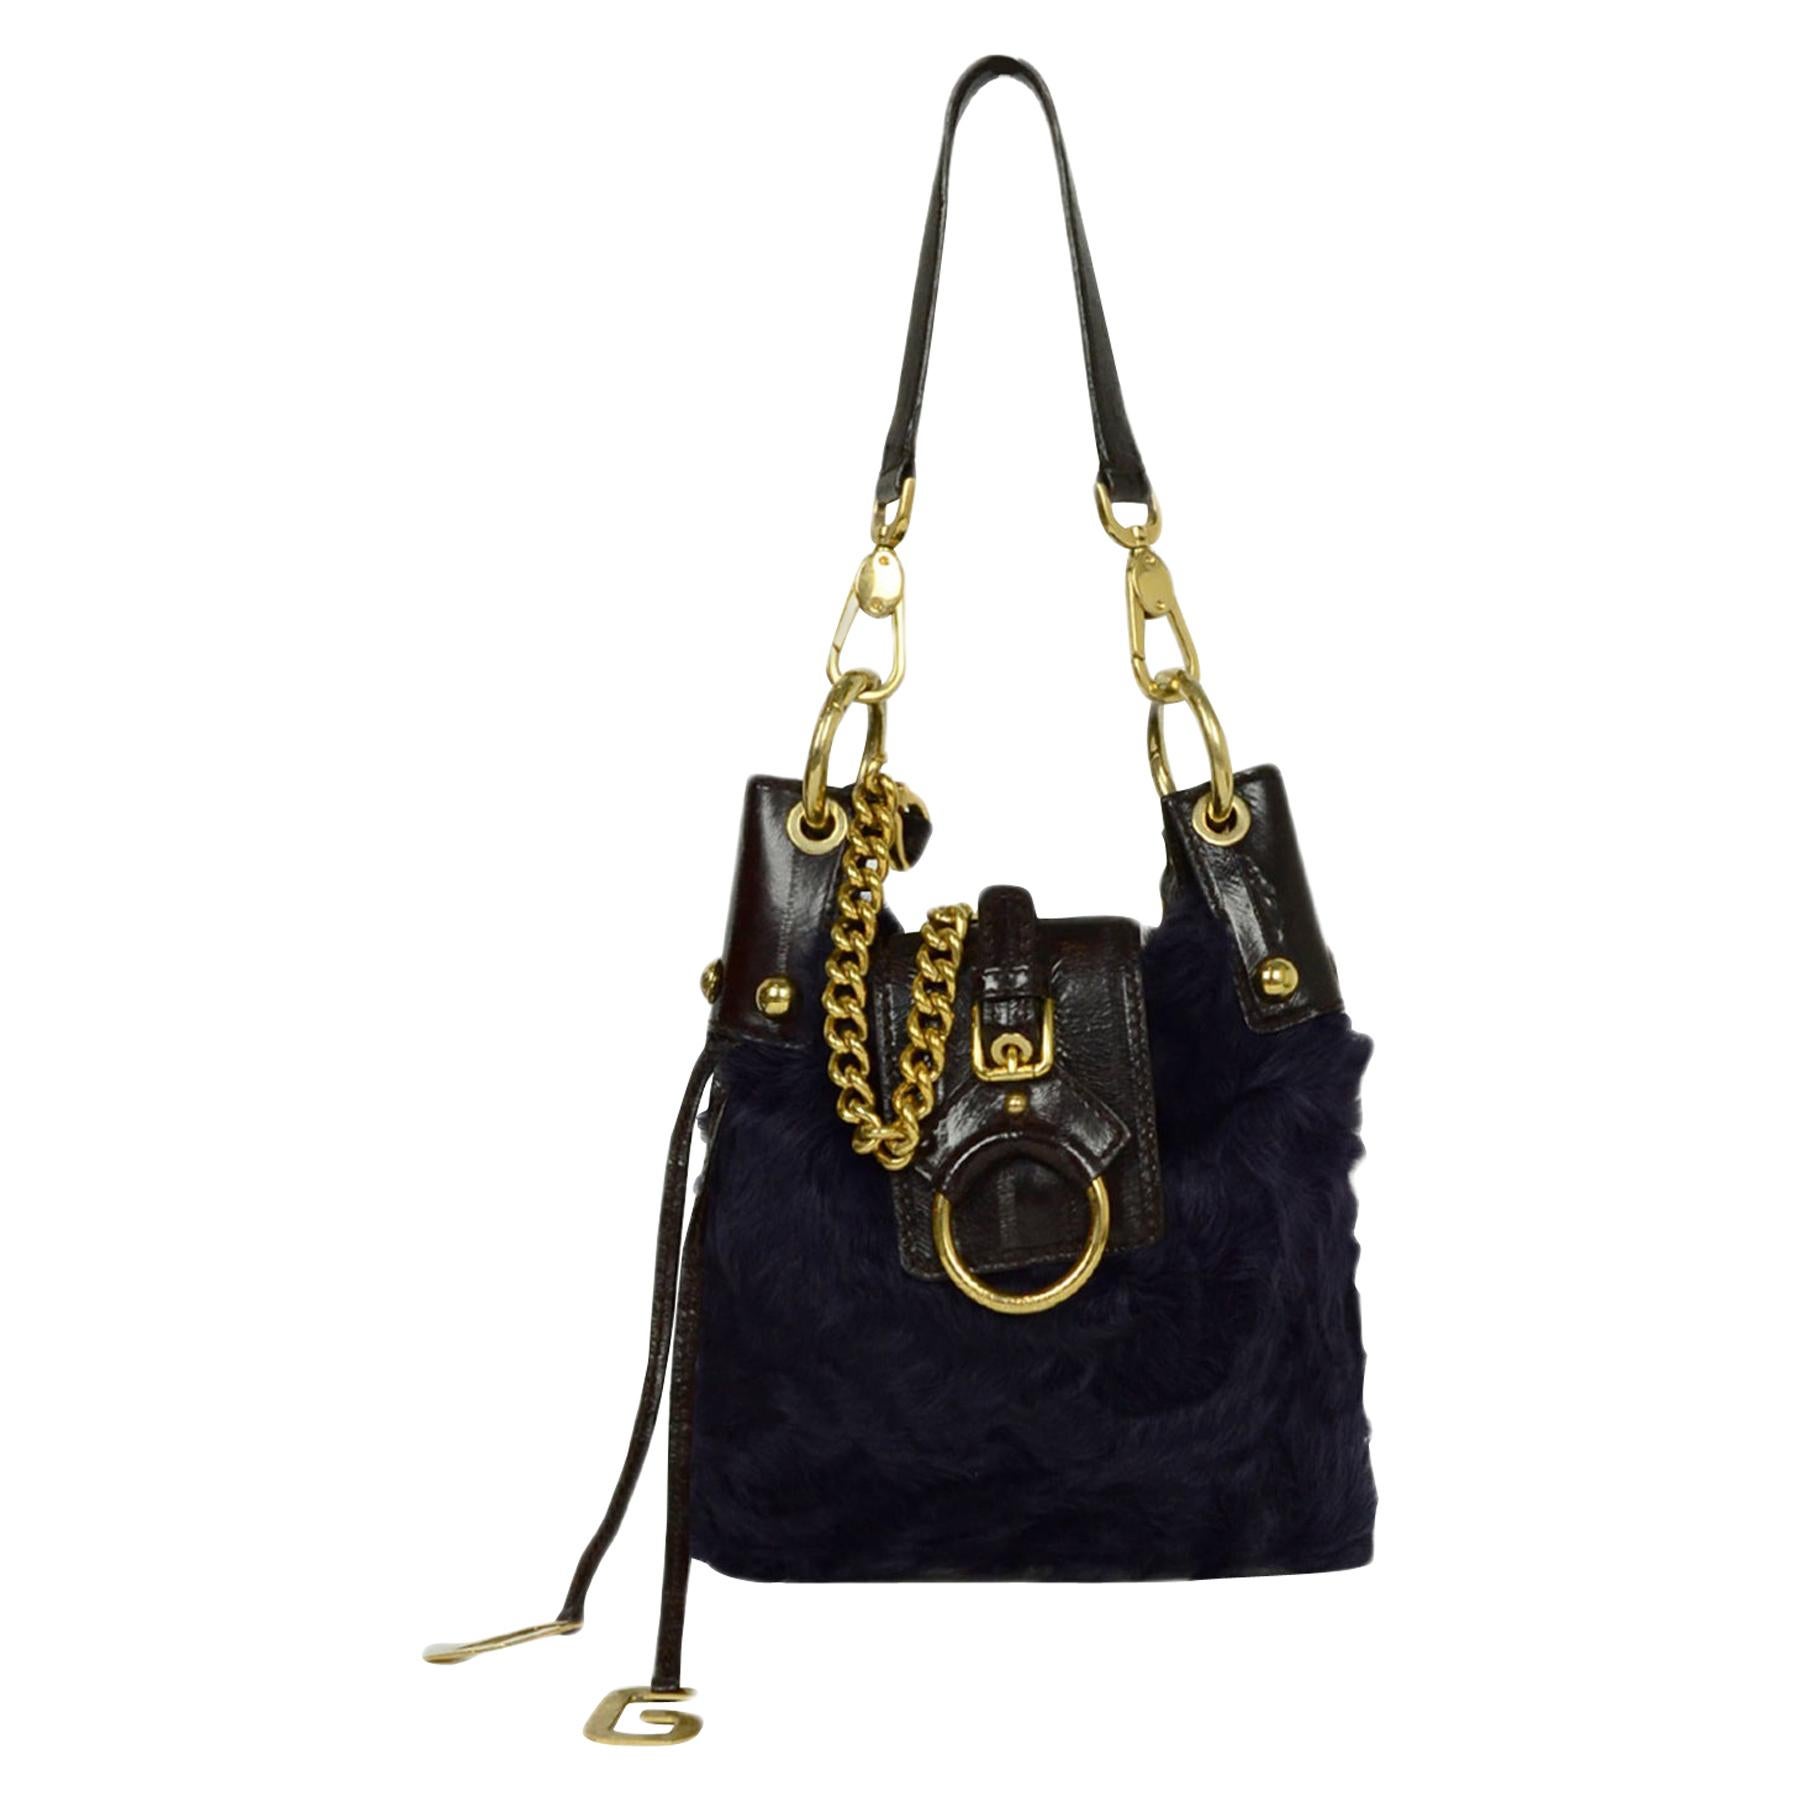 Dolce & Gabbana Purple Fur Bag with Chain Strap 